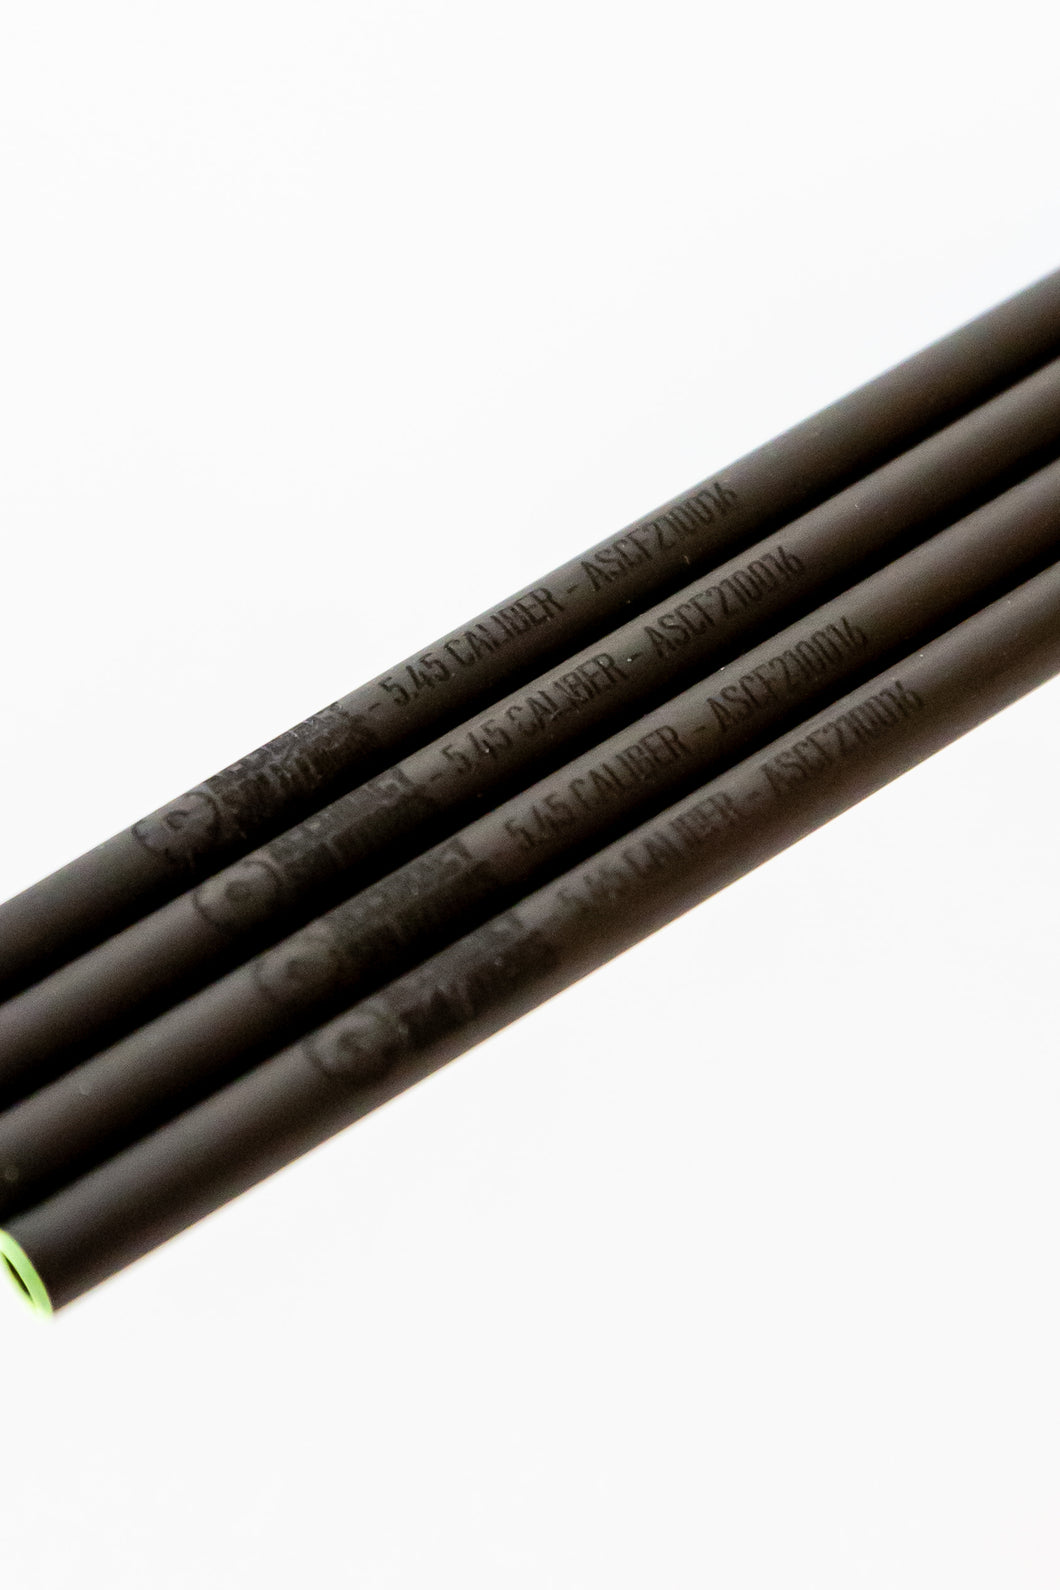 5.45MM Carbon Fiber Bore Alignment Rod